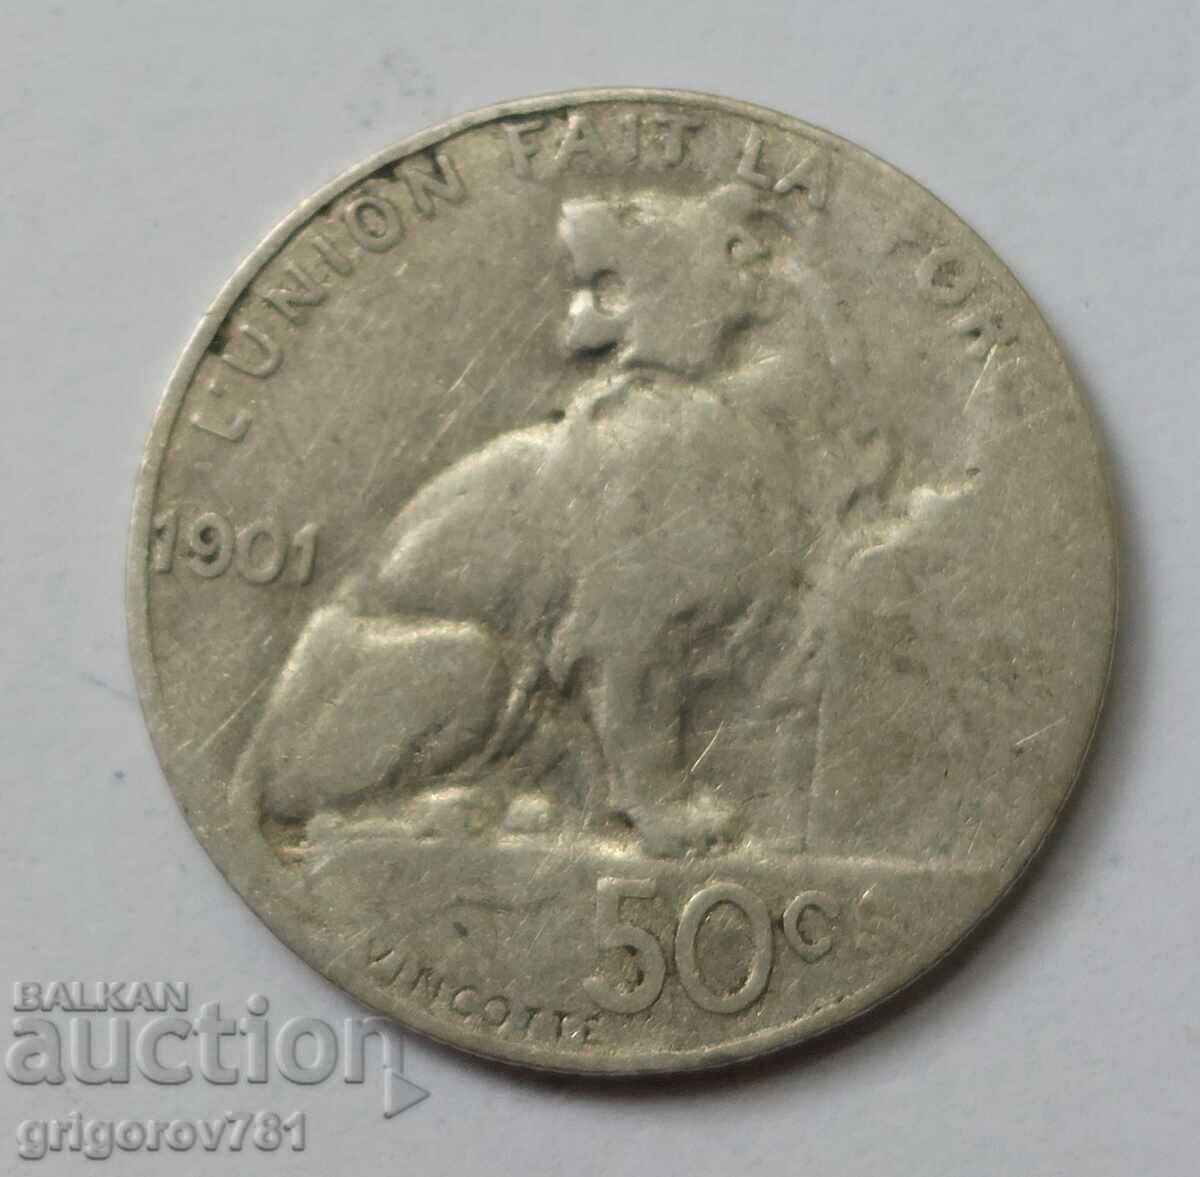 50 centimes silver Belgium 1901 - silver coin #75